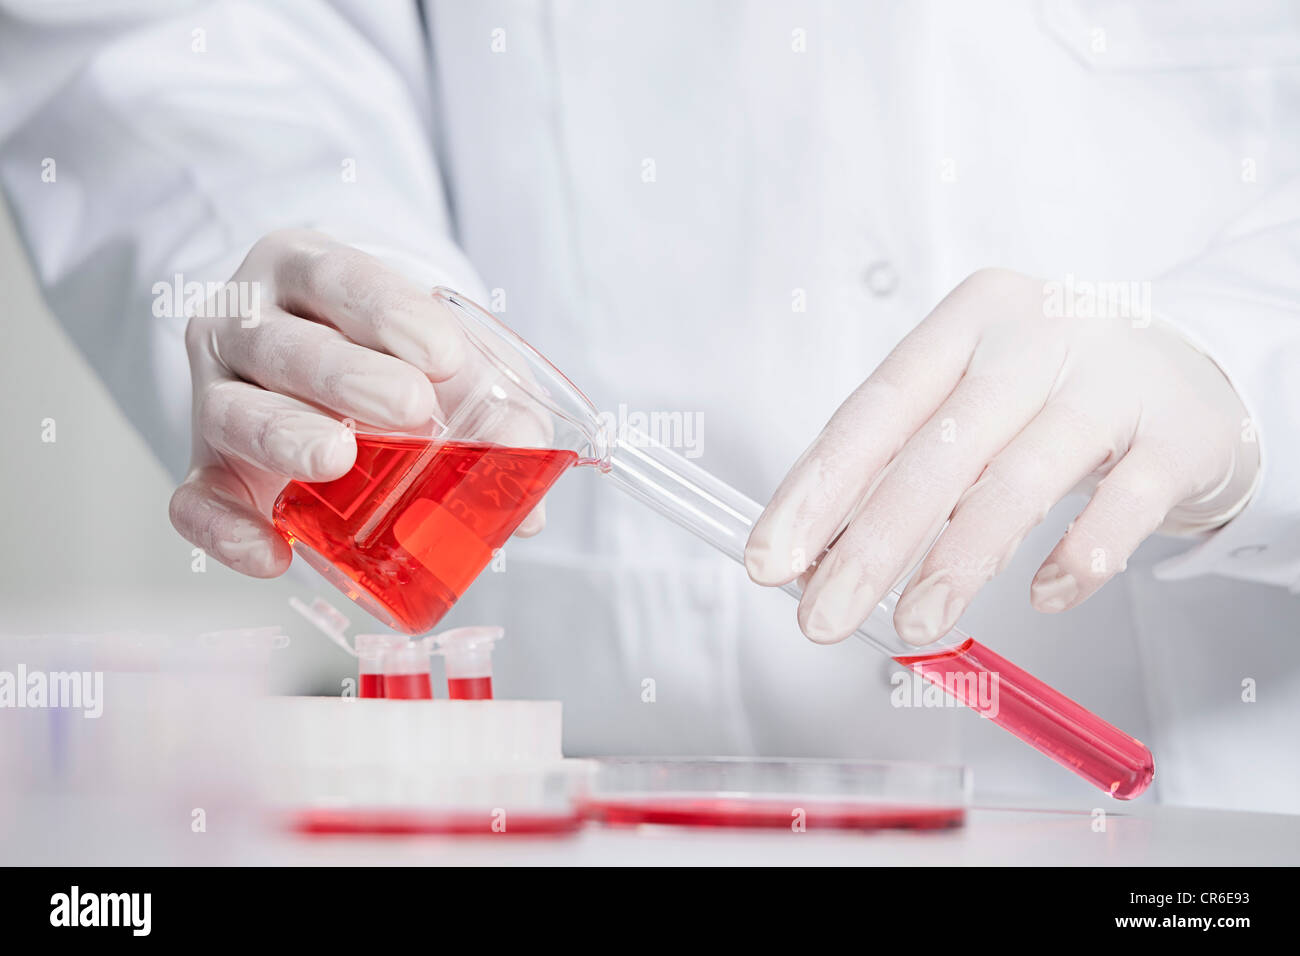 Alemania, Baviera, Munich, científico vertiendo líquido rojo en el tubo de ensayo en un laboratorio de investigación médica. Foto de stock